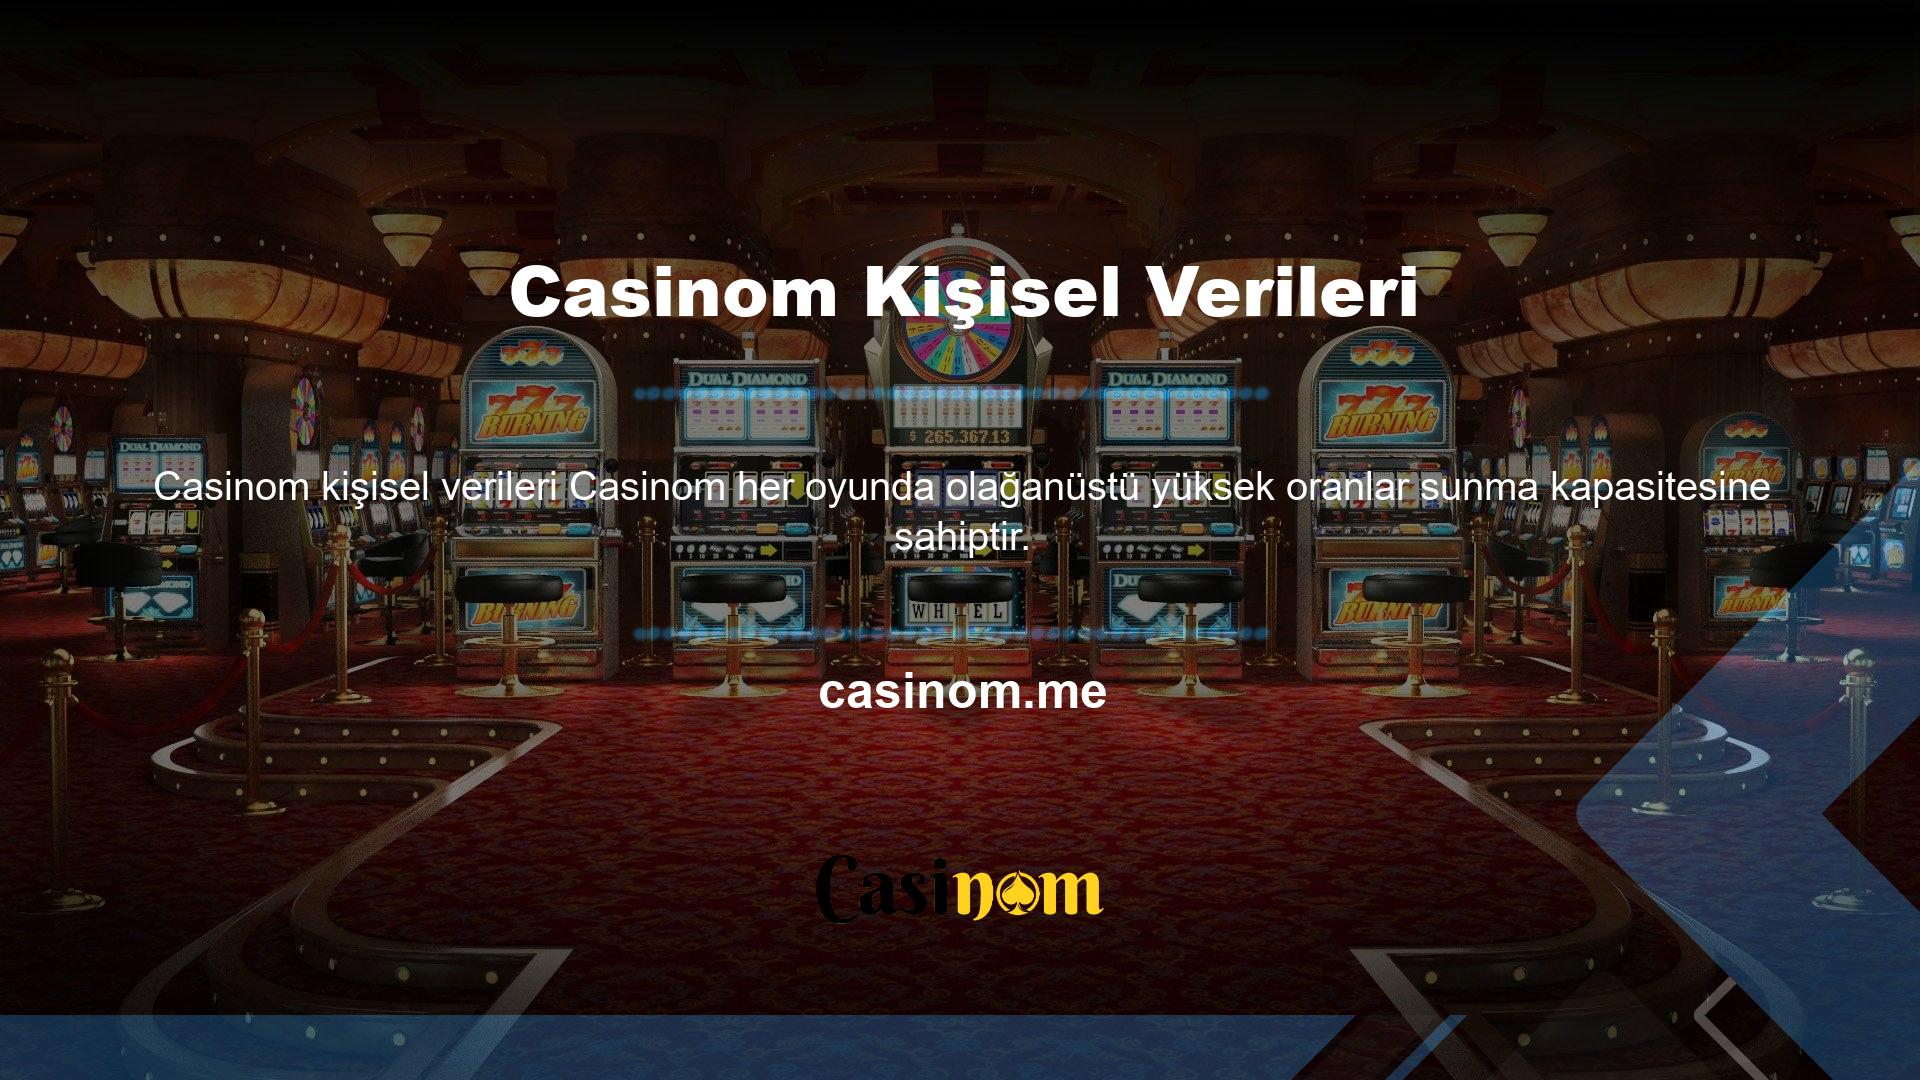 Casinom, daha fazla kullanıcı çekmek için ayrıntılı promosyonlar sunuyor